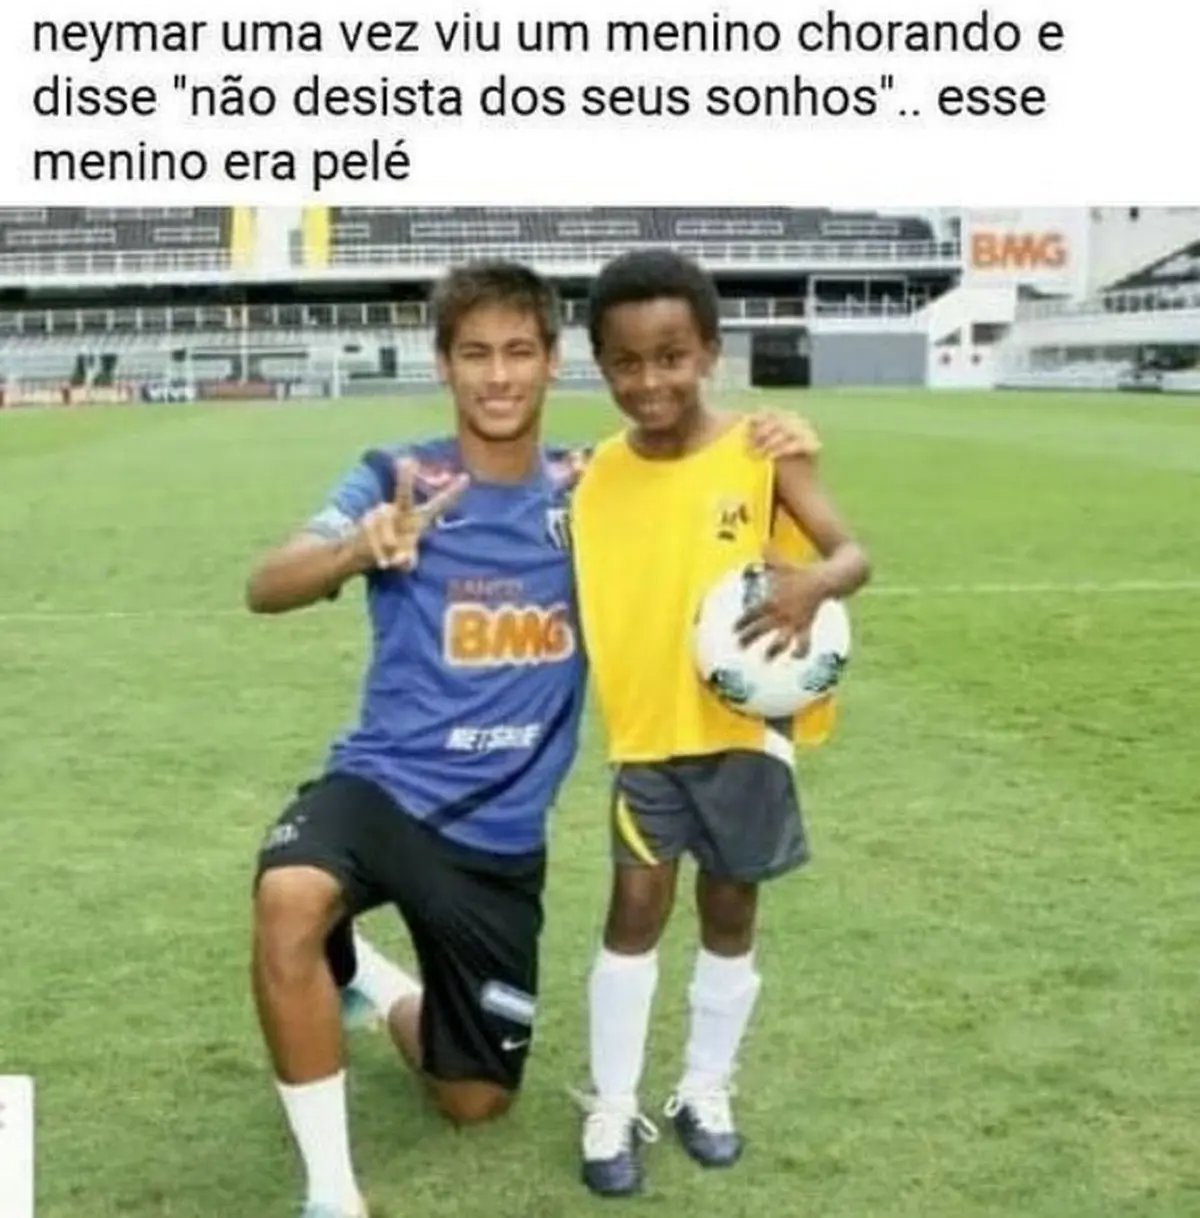 Neymar uma vez viu um menino chorando e falou nao desista dos seus sonhos esse menino era pele